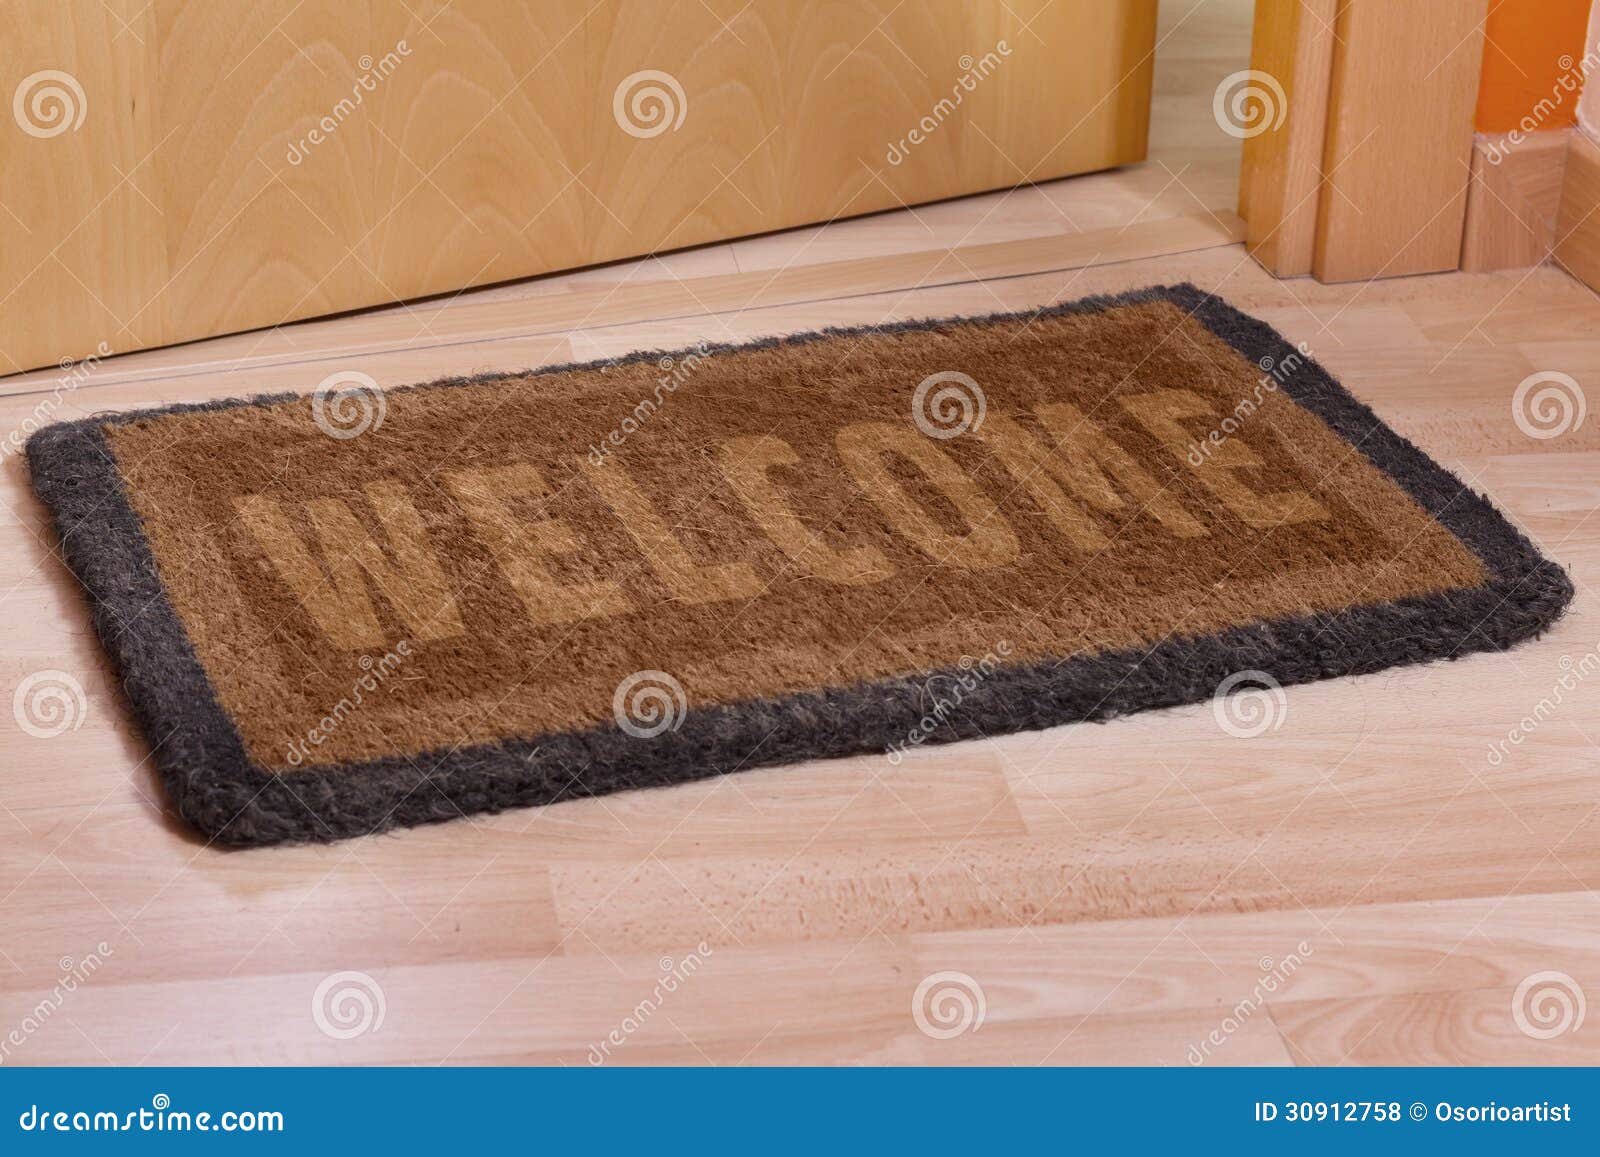 Welcome Home Doormat With Open Door Stock Photo - Image of greeting ...